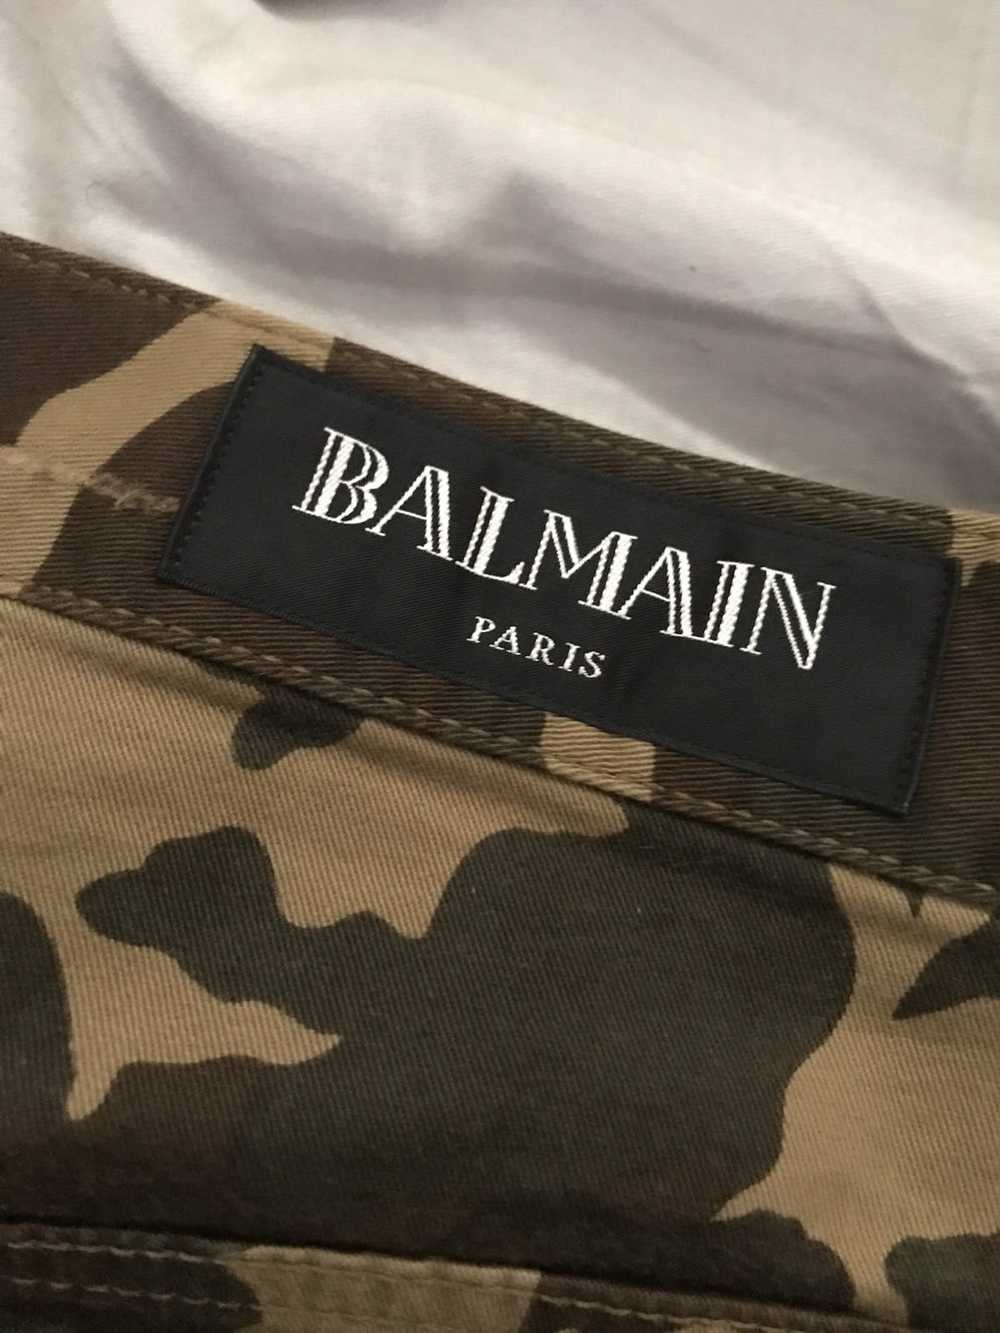 Balmain Balmain Distress army fatigue pants - image 8